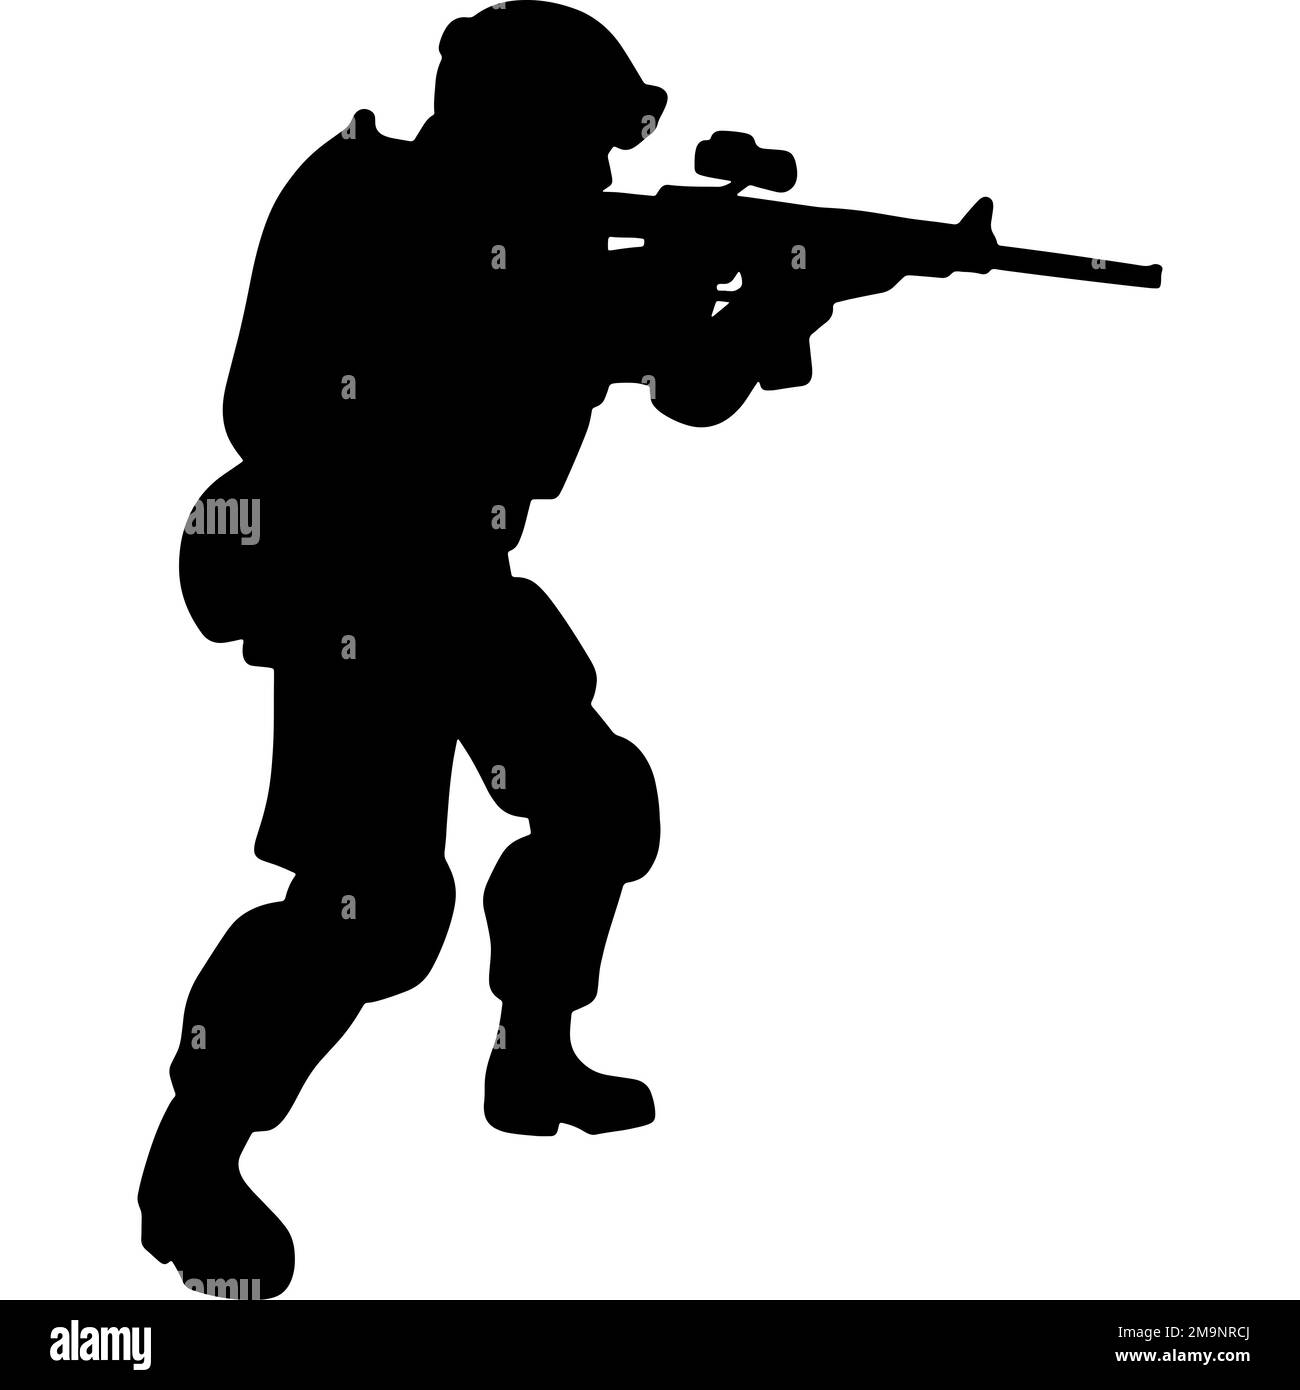 Silhouette bianca e nera di un soldato con un'arma. Un soldato delle forze speciali punta e spara un fucile o una mitragliatrice contro il nemico Foto Stock